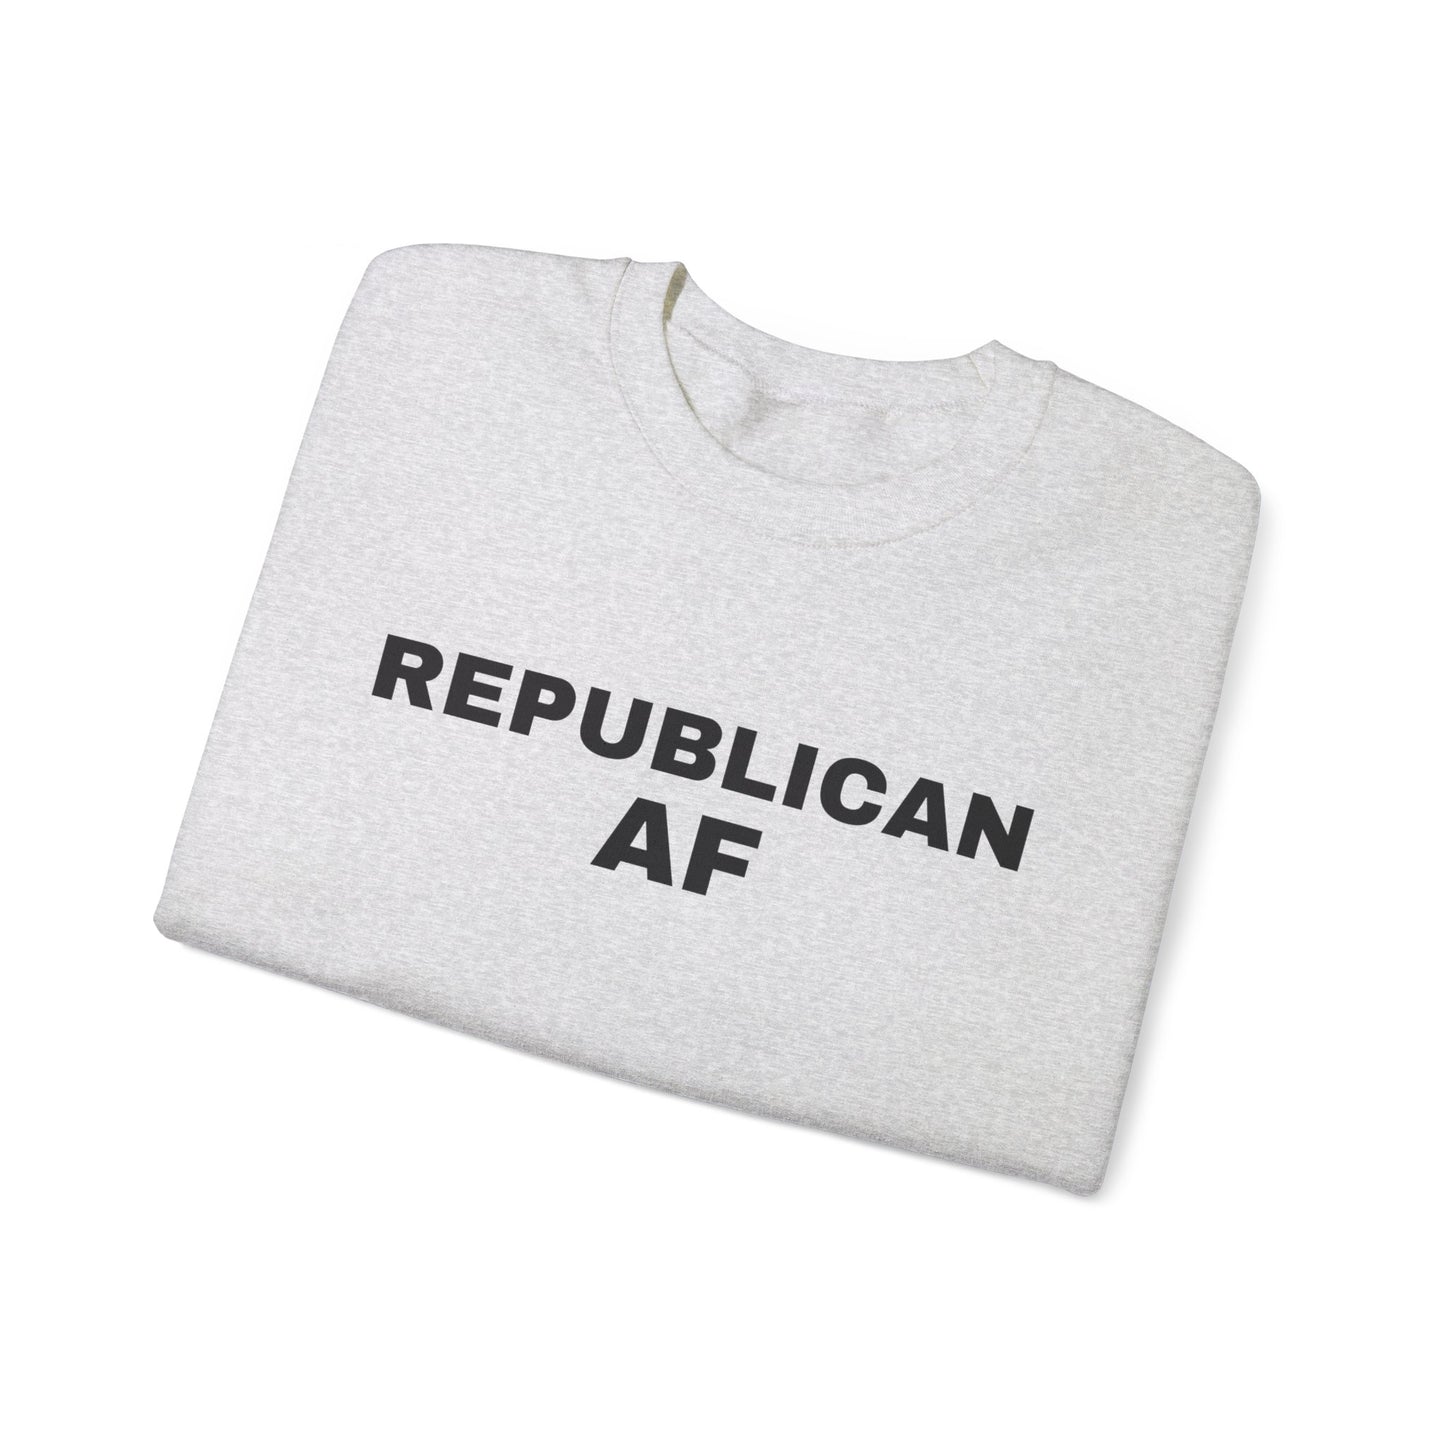 Republican AF Women's Sweatshirt